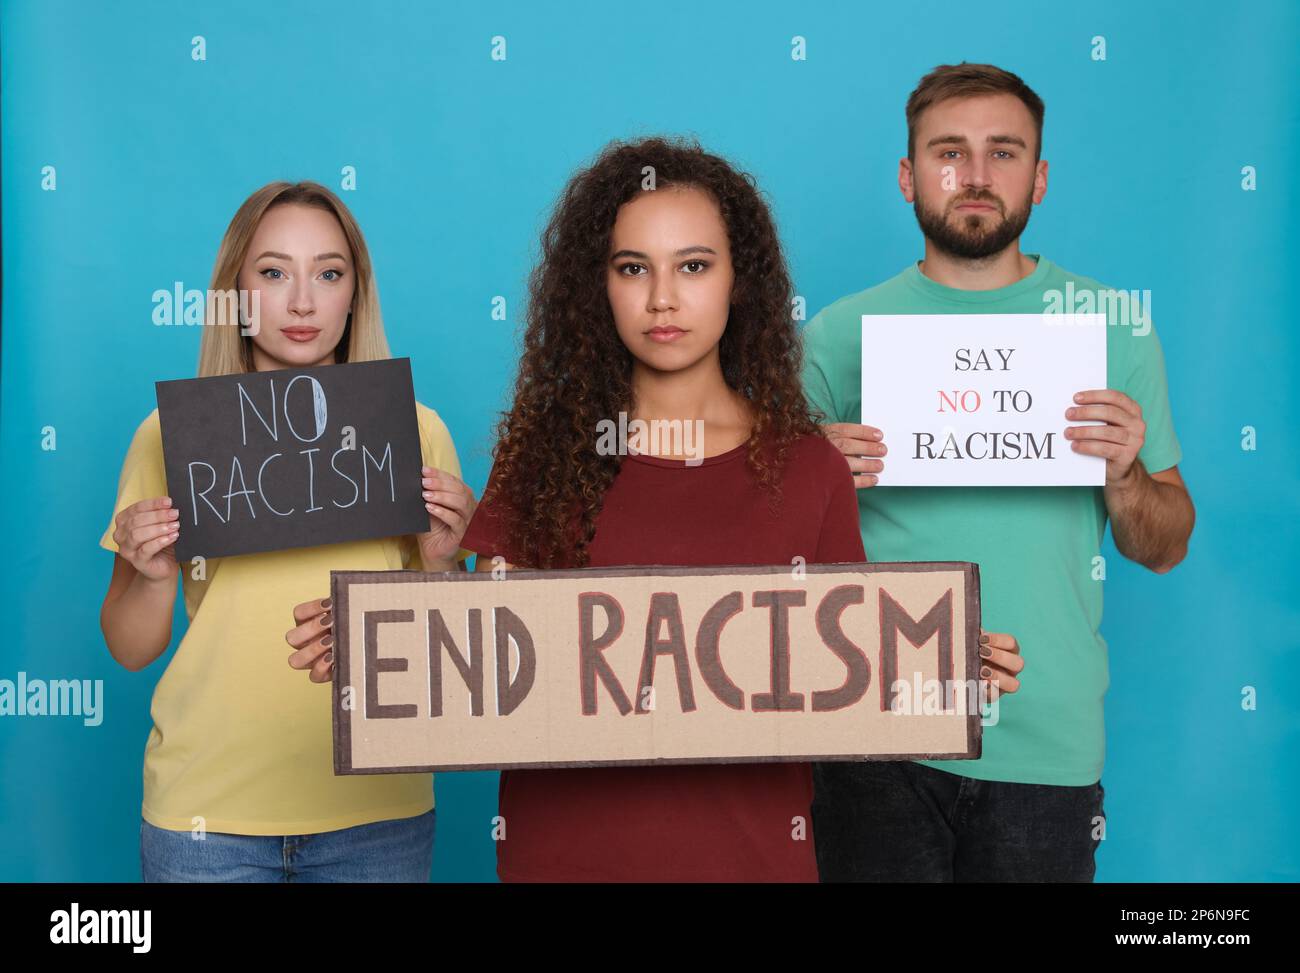 Groupe de personnes portant des affiches sur fond bleu clair. Concept de racisme Banque D'Images